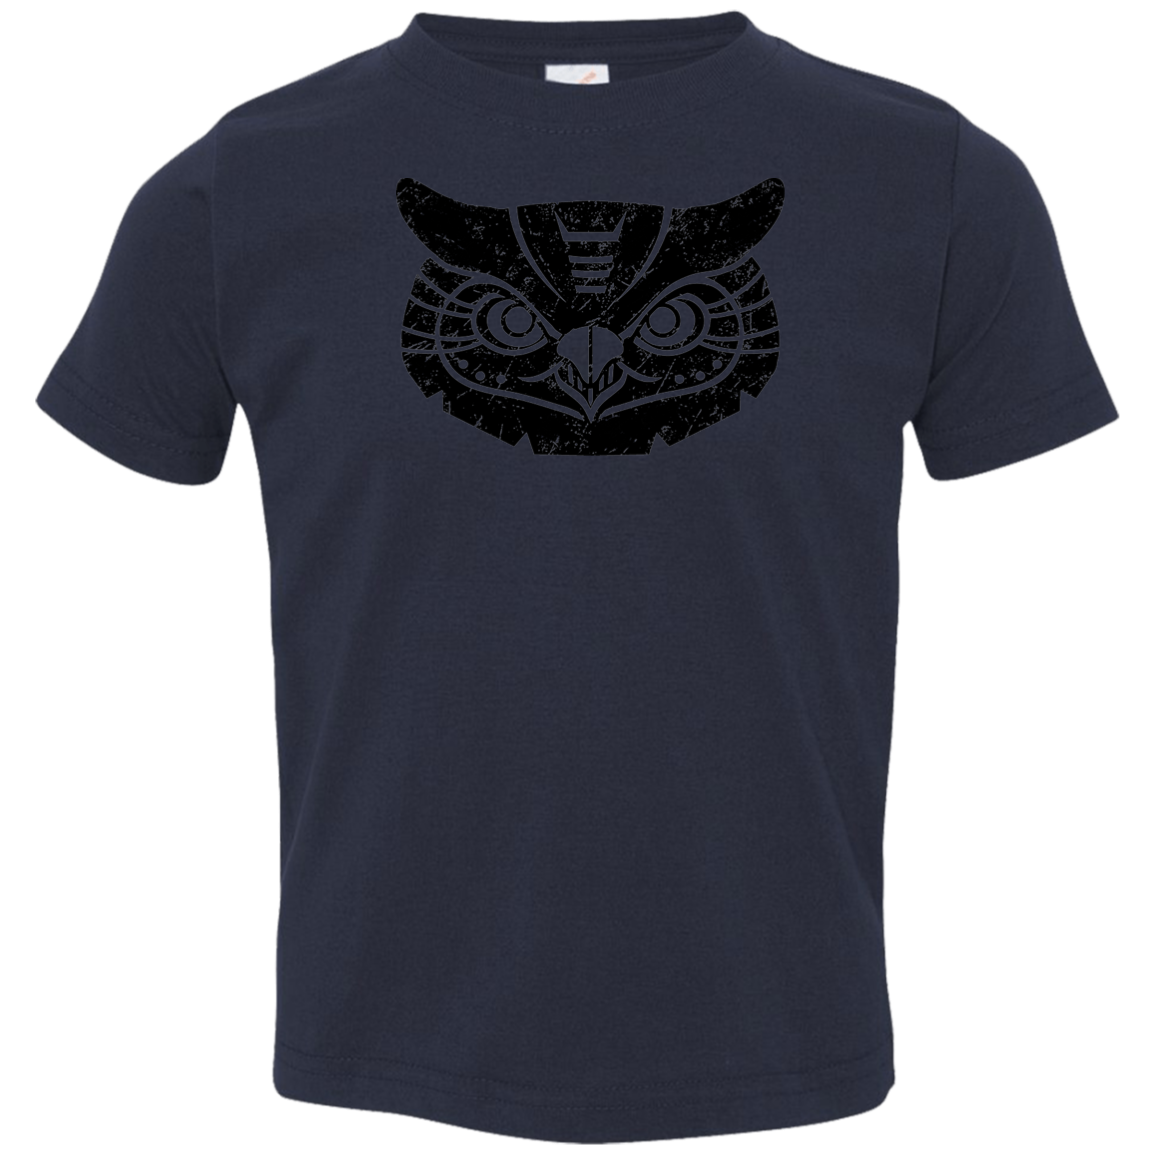 Black Distressed Emblem T-Shirt for Toddlers (Great Horned Owl/Luna)